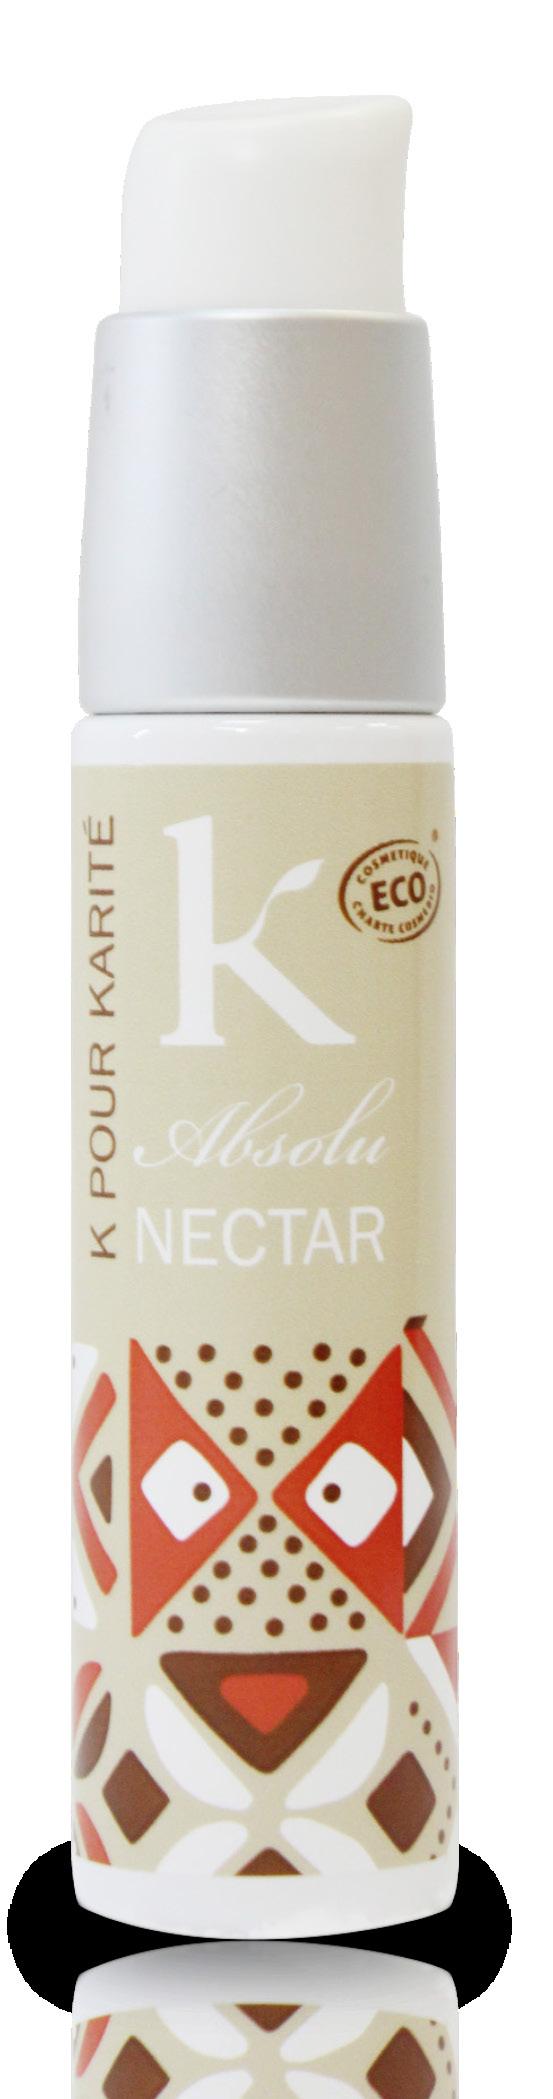 Nettare absolu capelli e corpo 50 ml Il Nectar Absolu vanta una concentrazione di Burro di Karité Bio pari al 49%. Ideale per i capelli secchi e disidratati ma anche per quelli ricci e molto spessi.